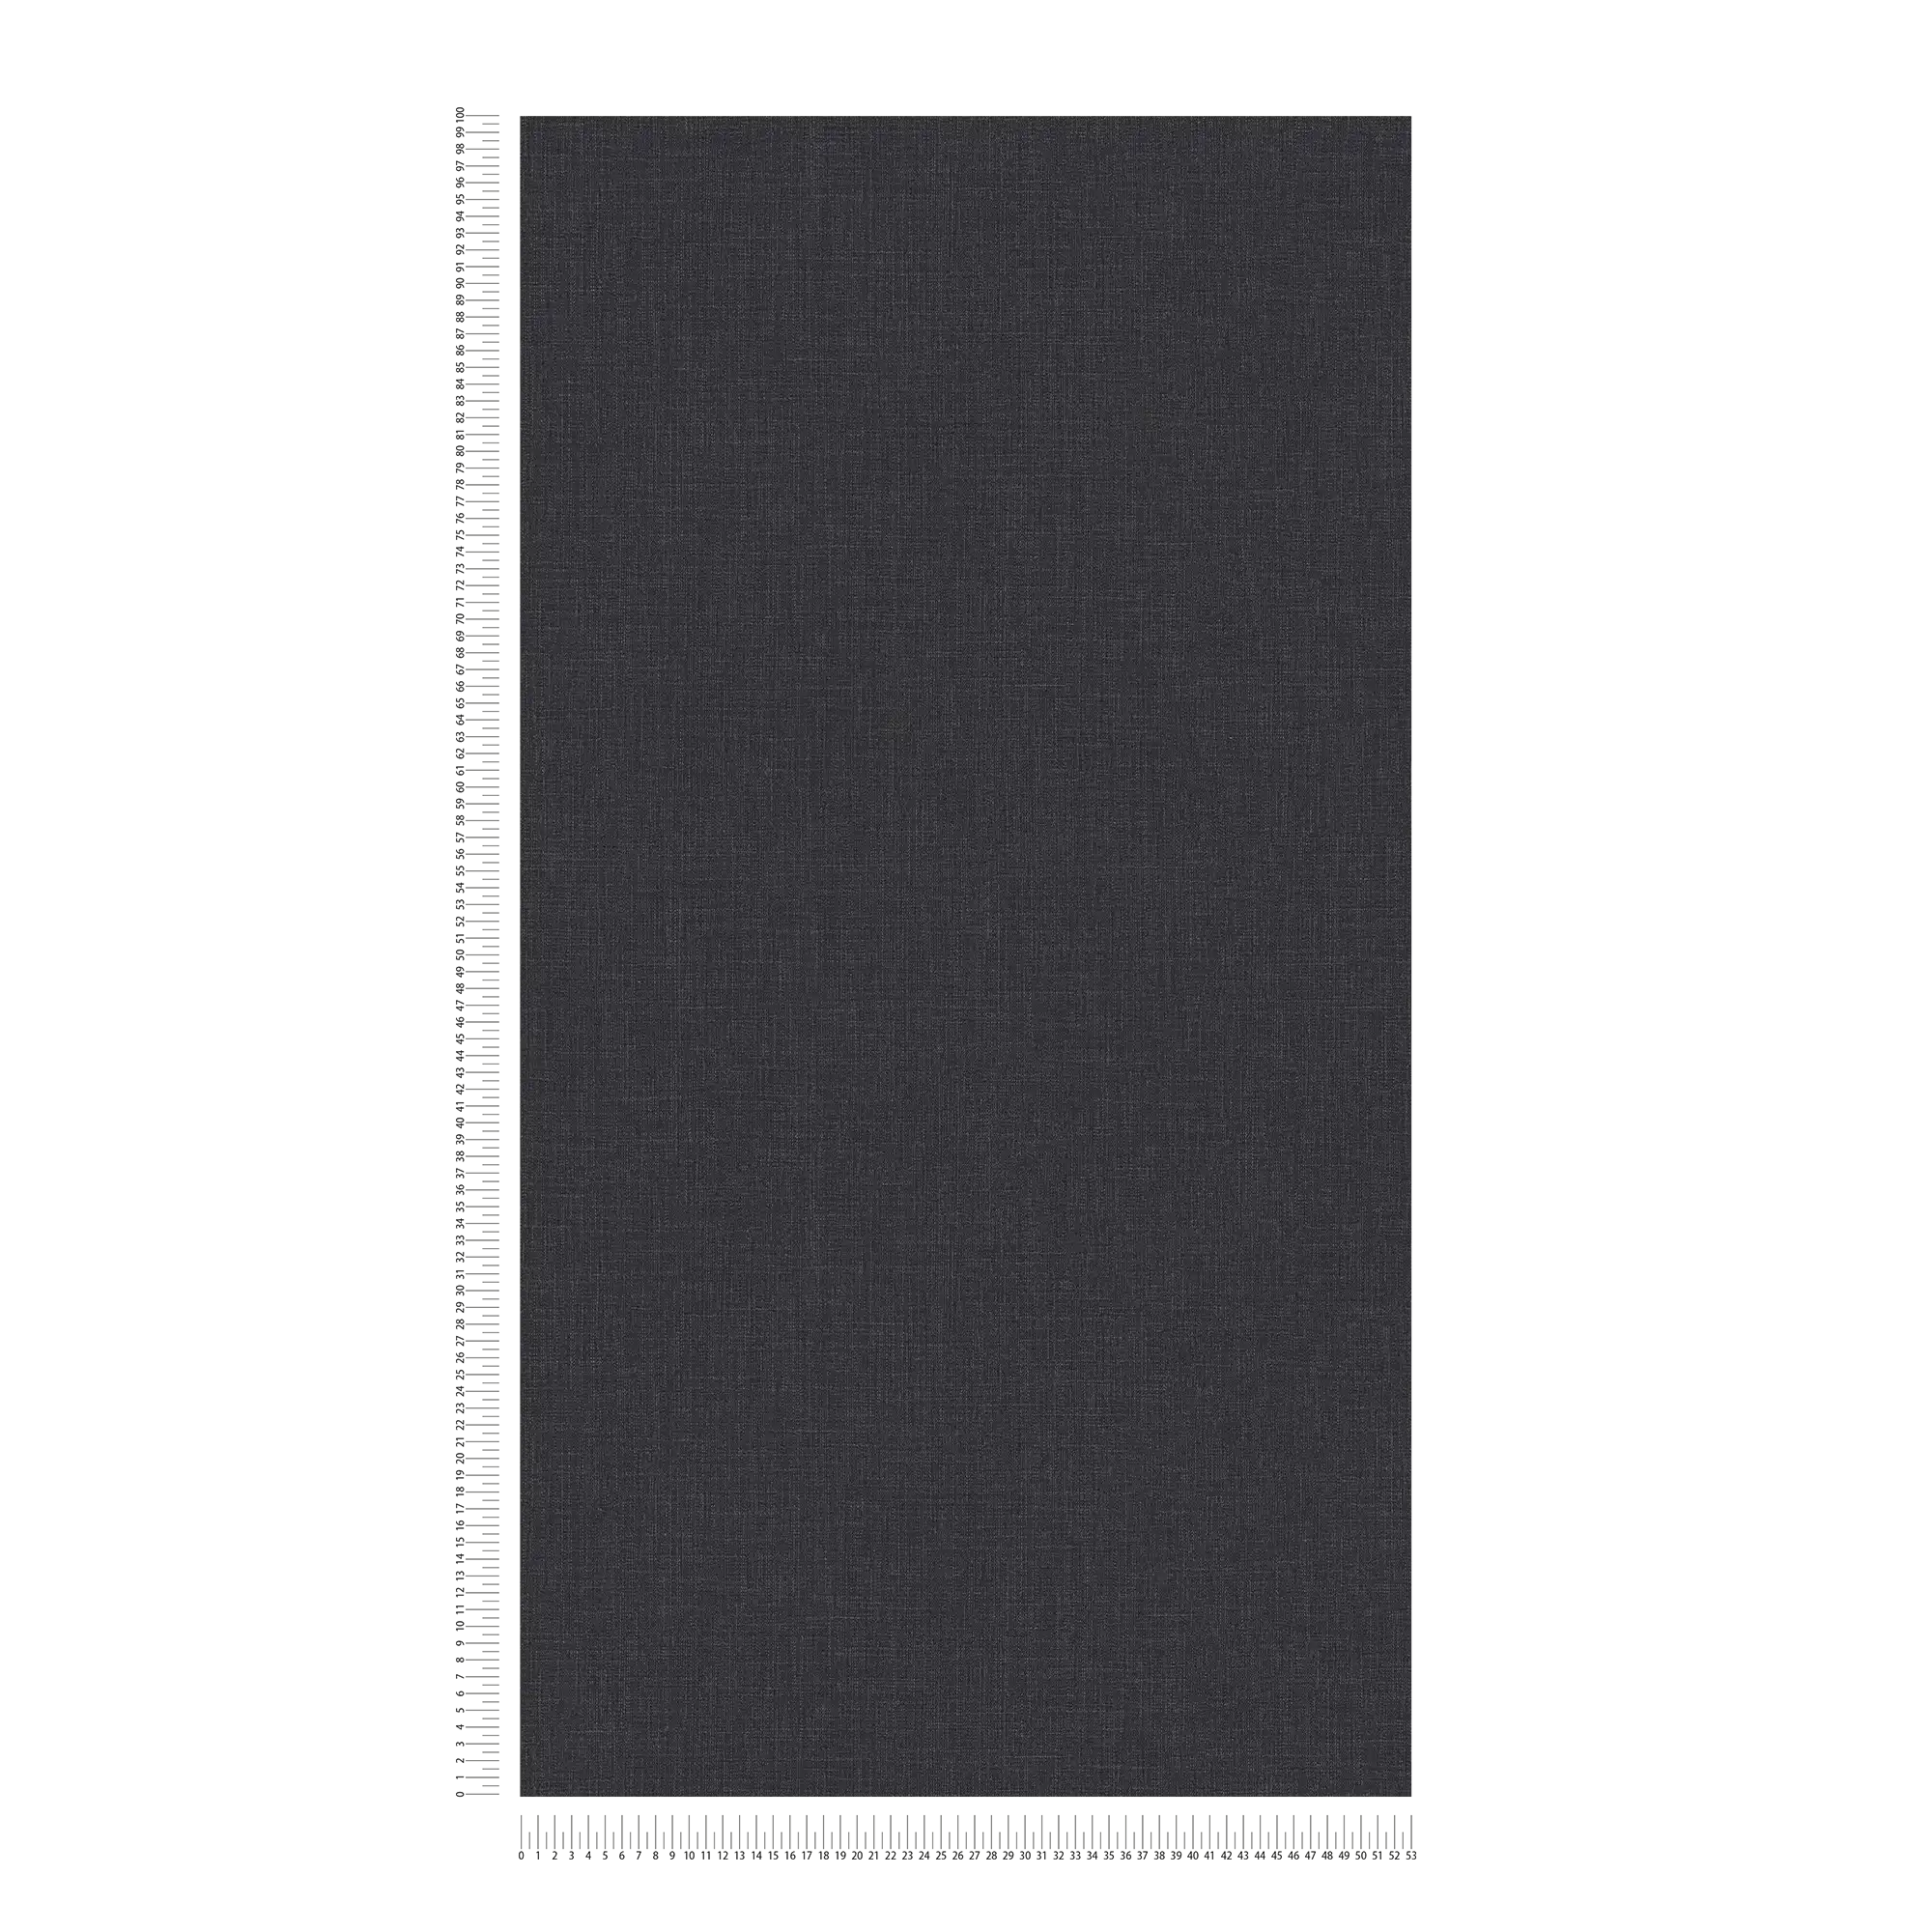             Papier peint intissé chiné aspect textile - bleu, gris, blanc
        